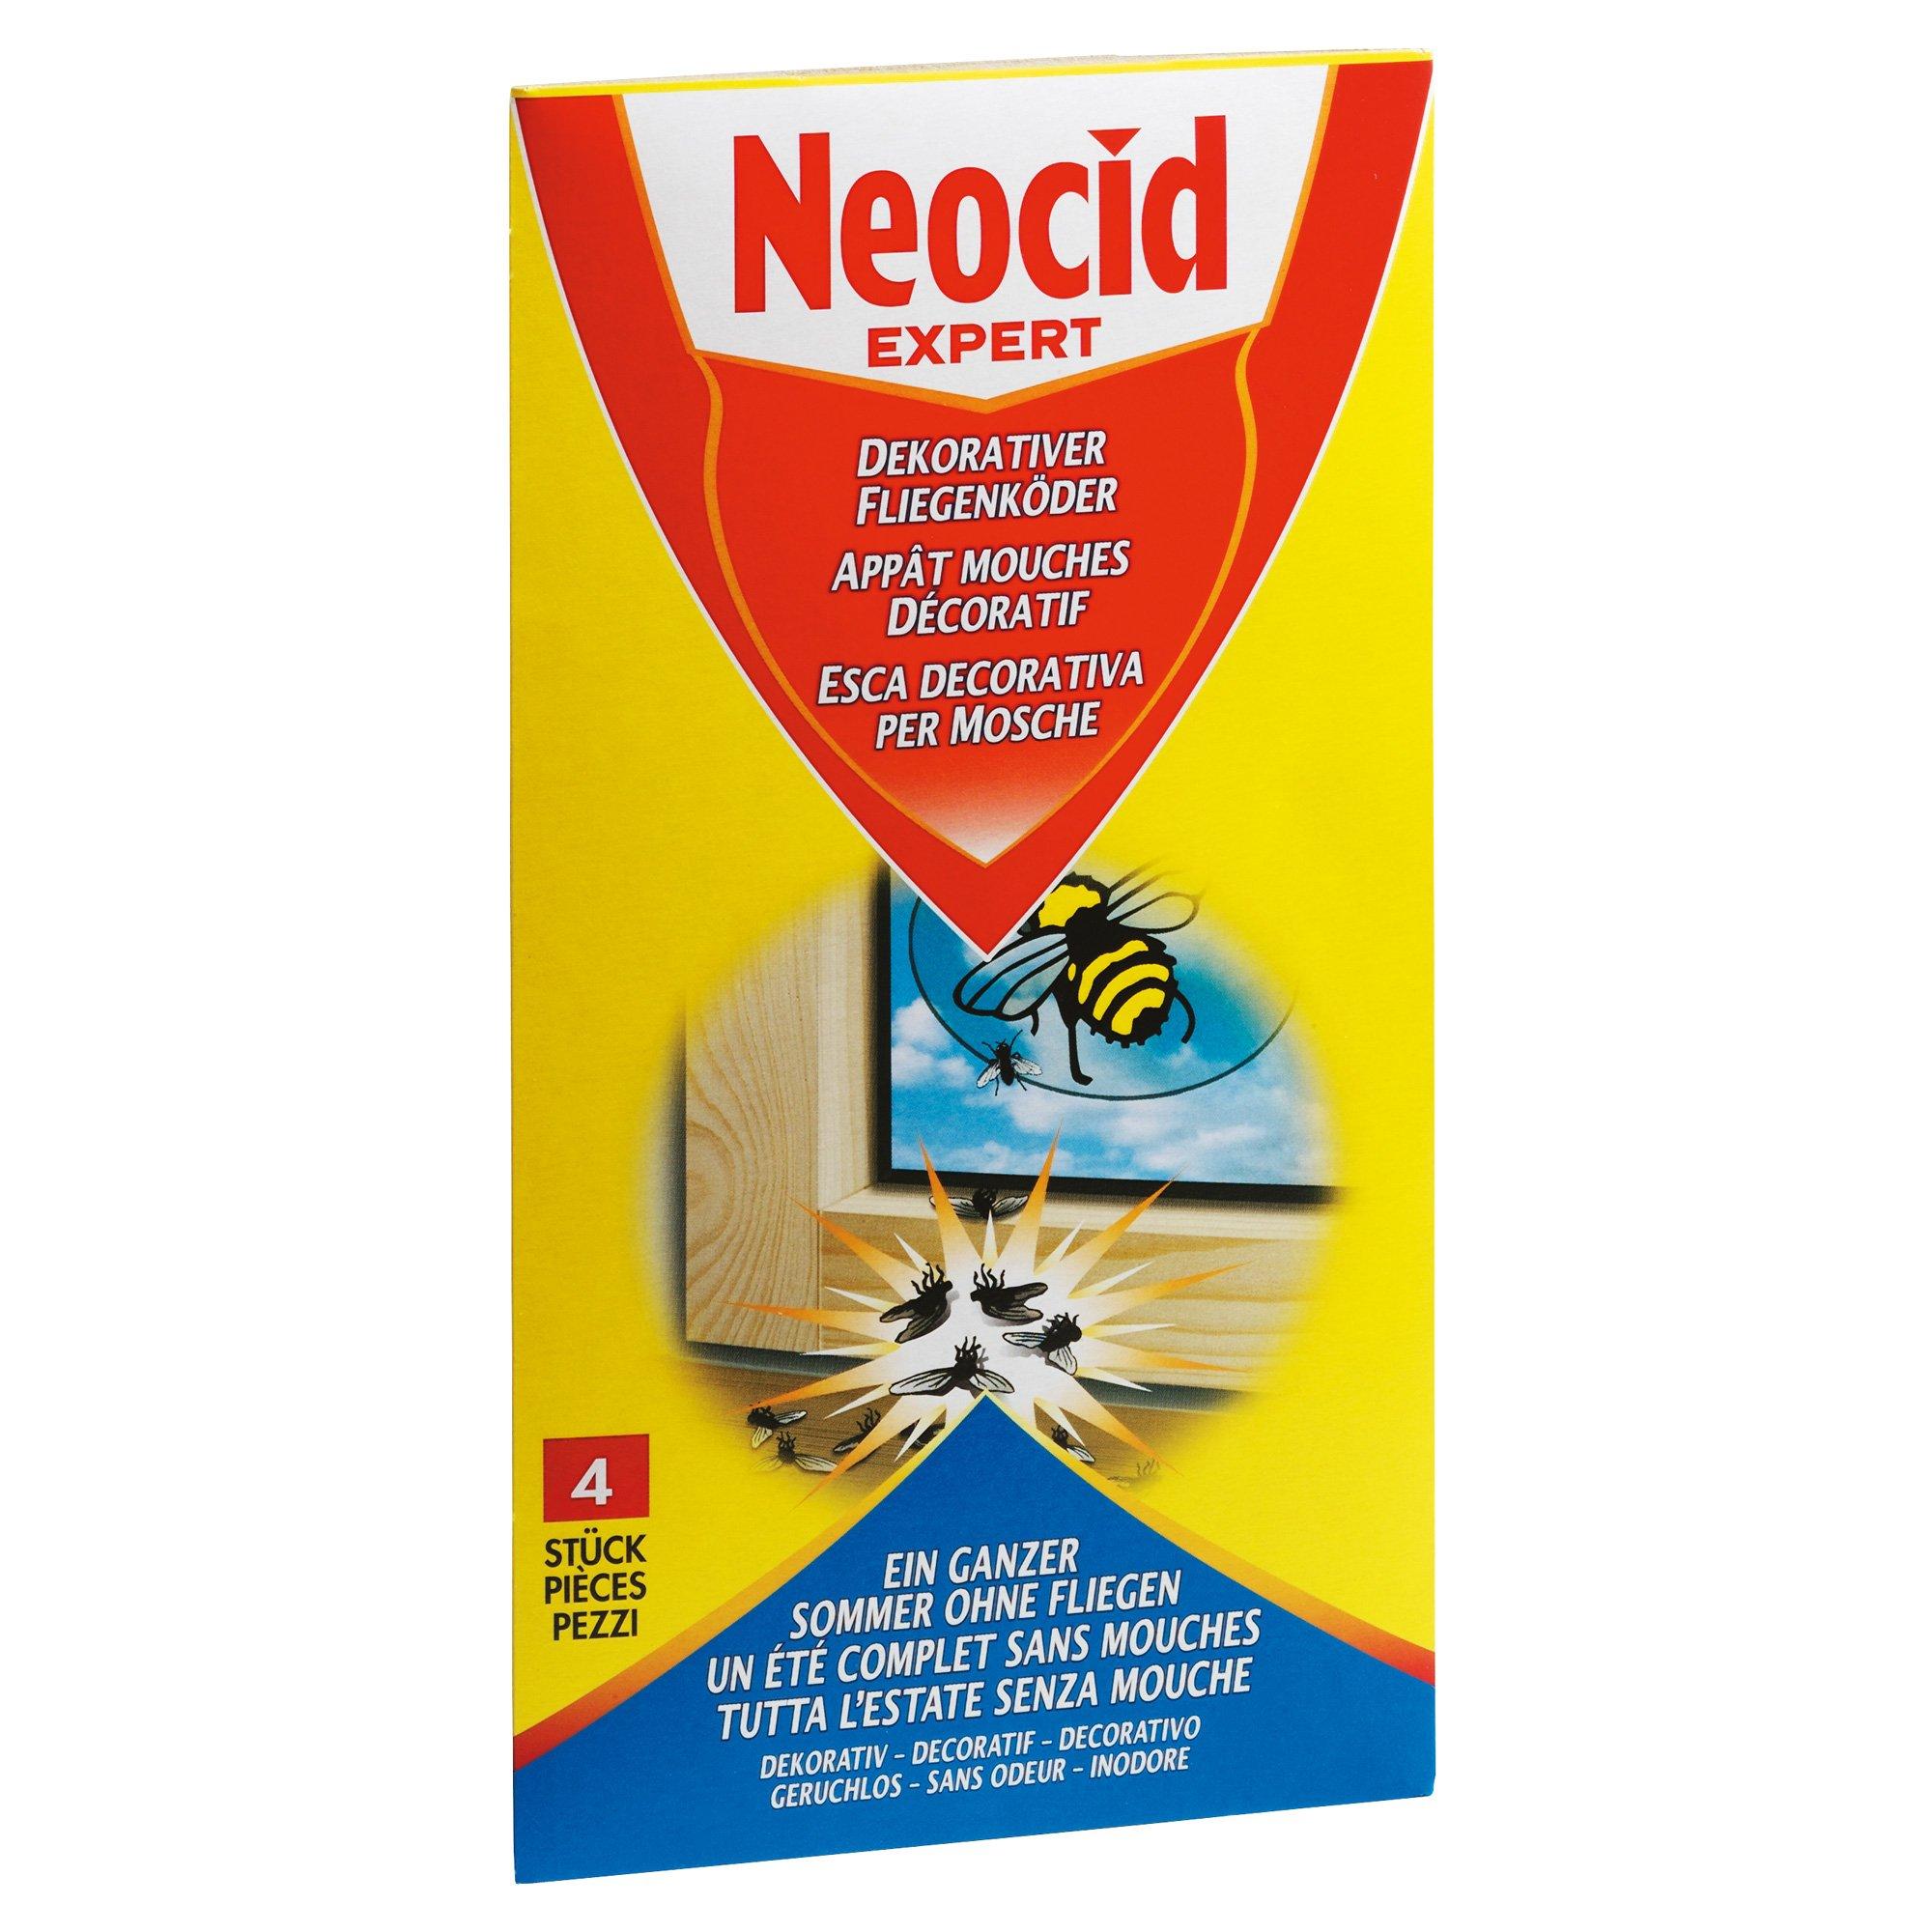 Image of Neocid EXPERT Dekorativer Fliegenköder - 4 pezzi